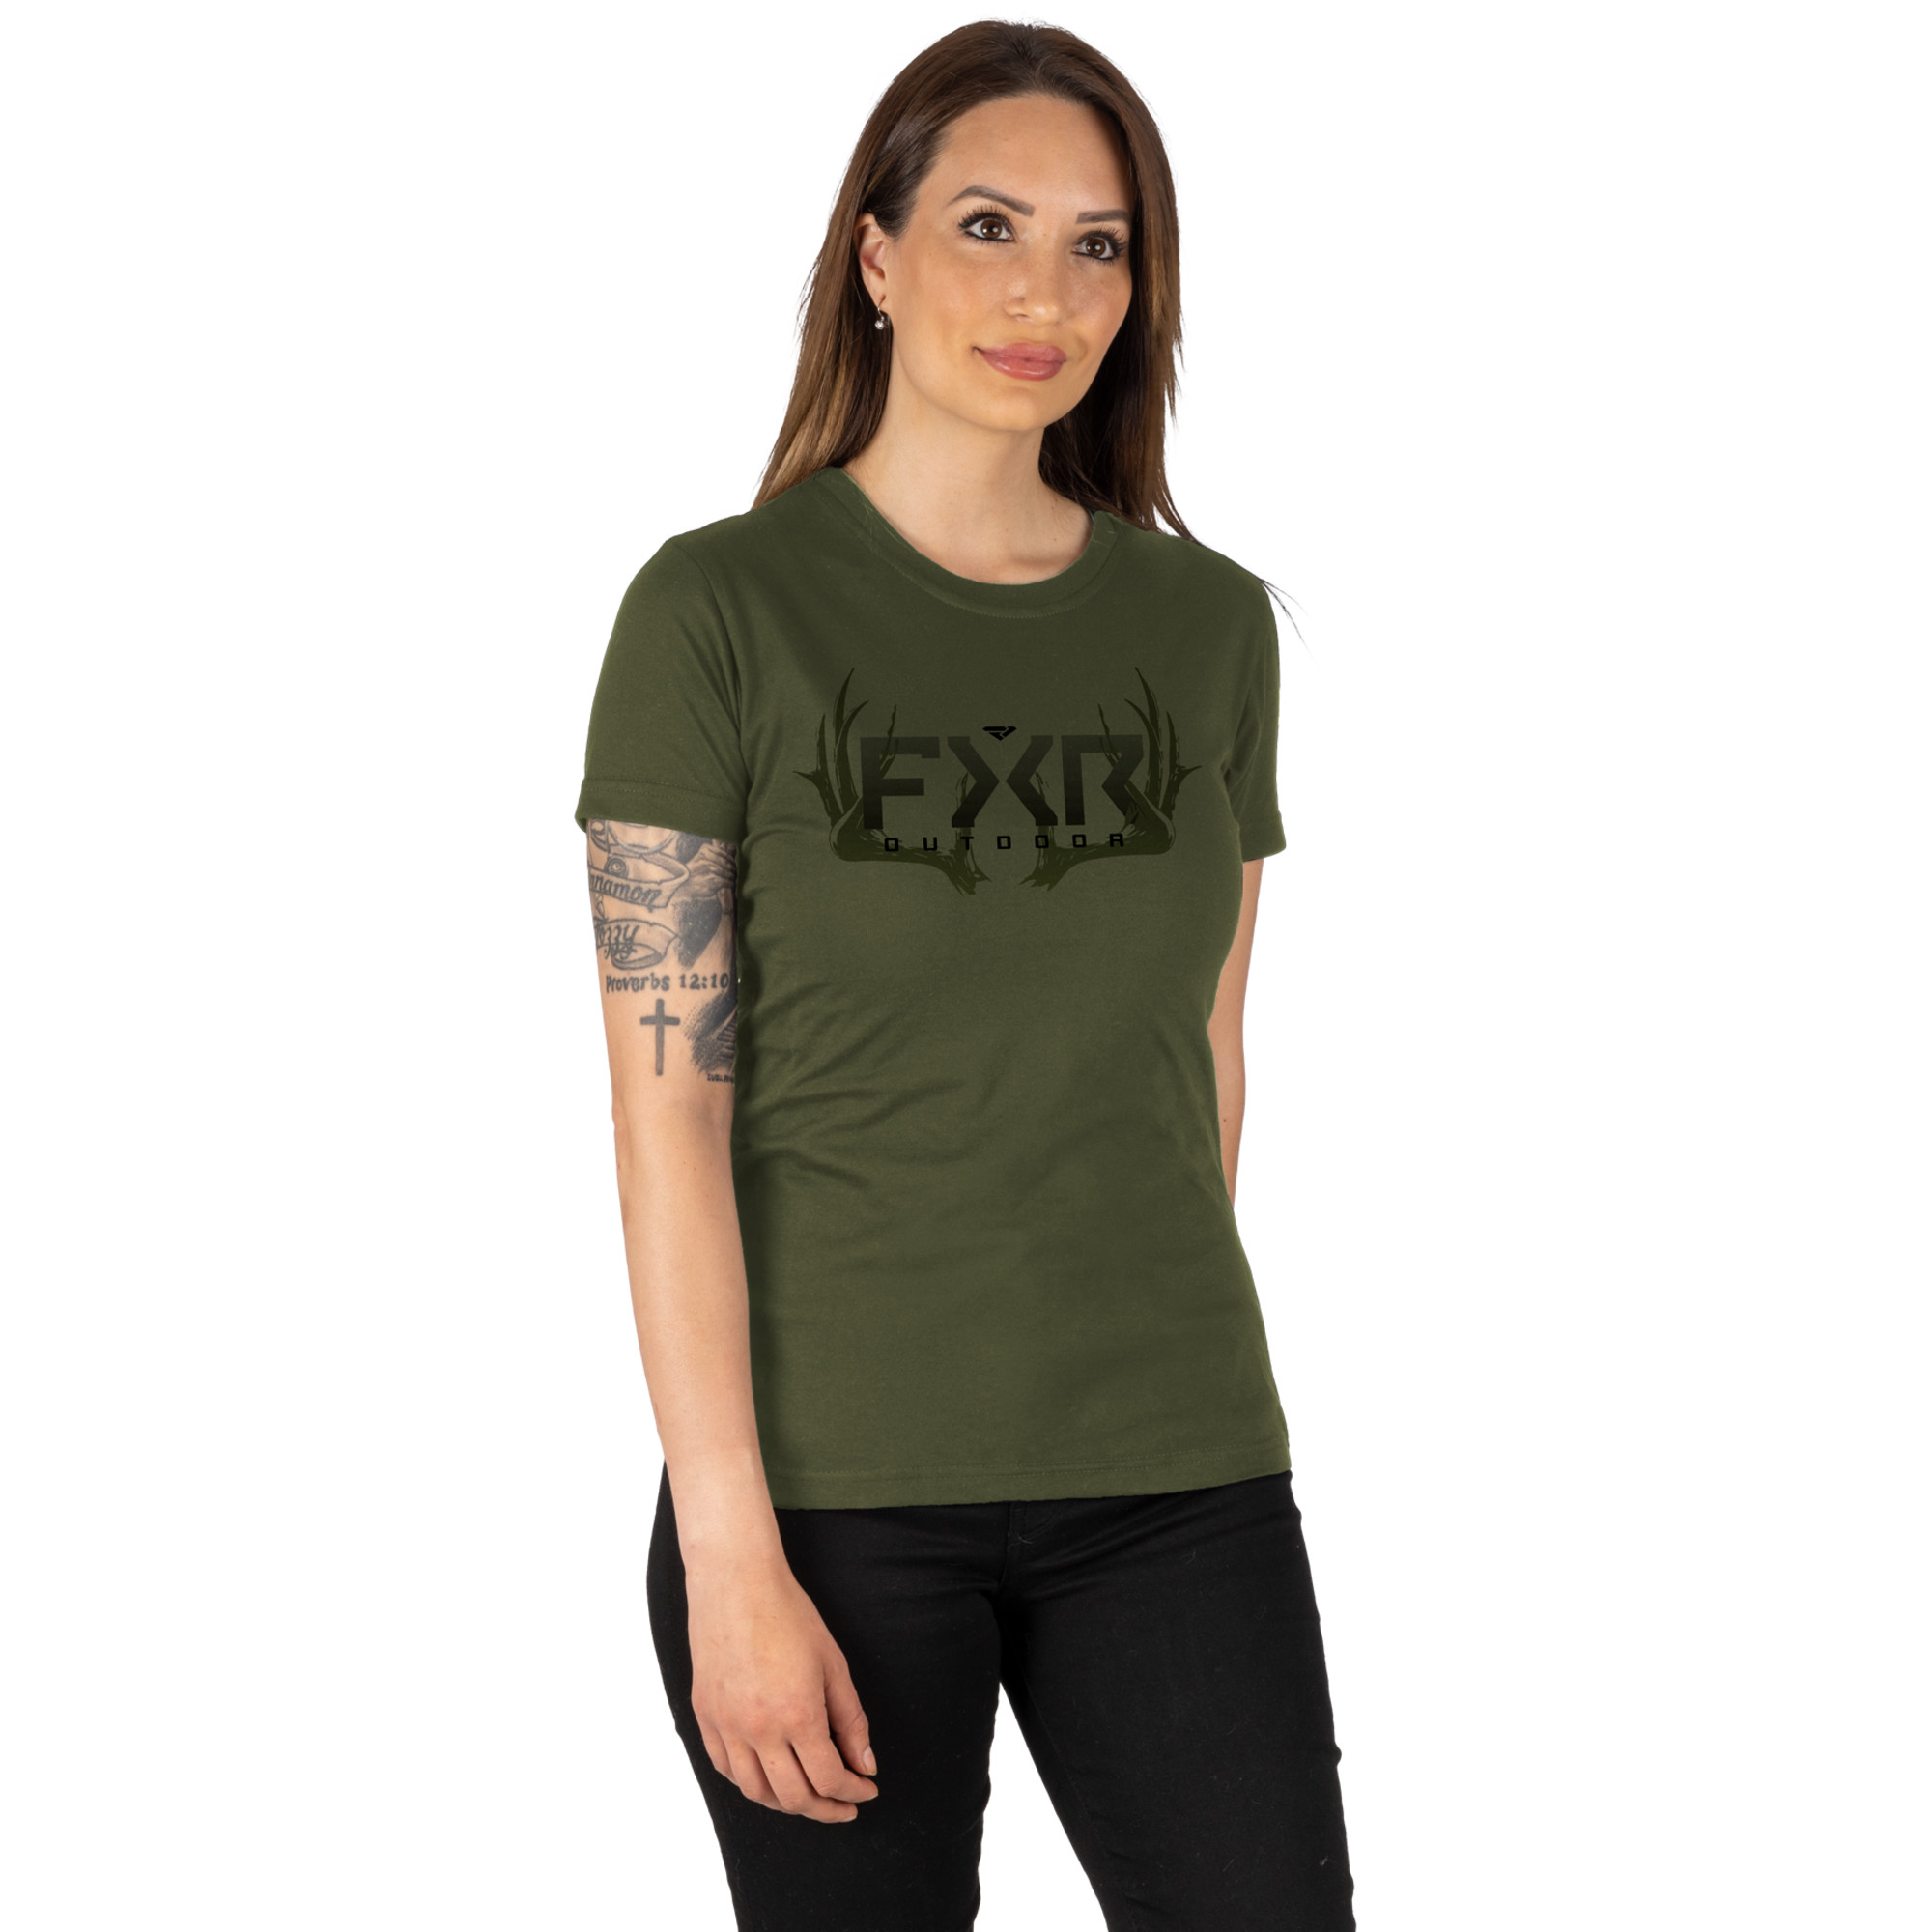 mode femmes chandails t-shirts par fxr racing pour antler premium